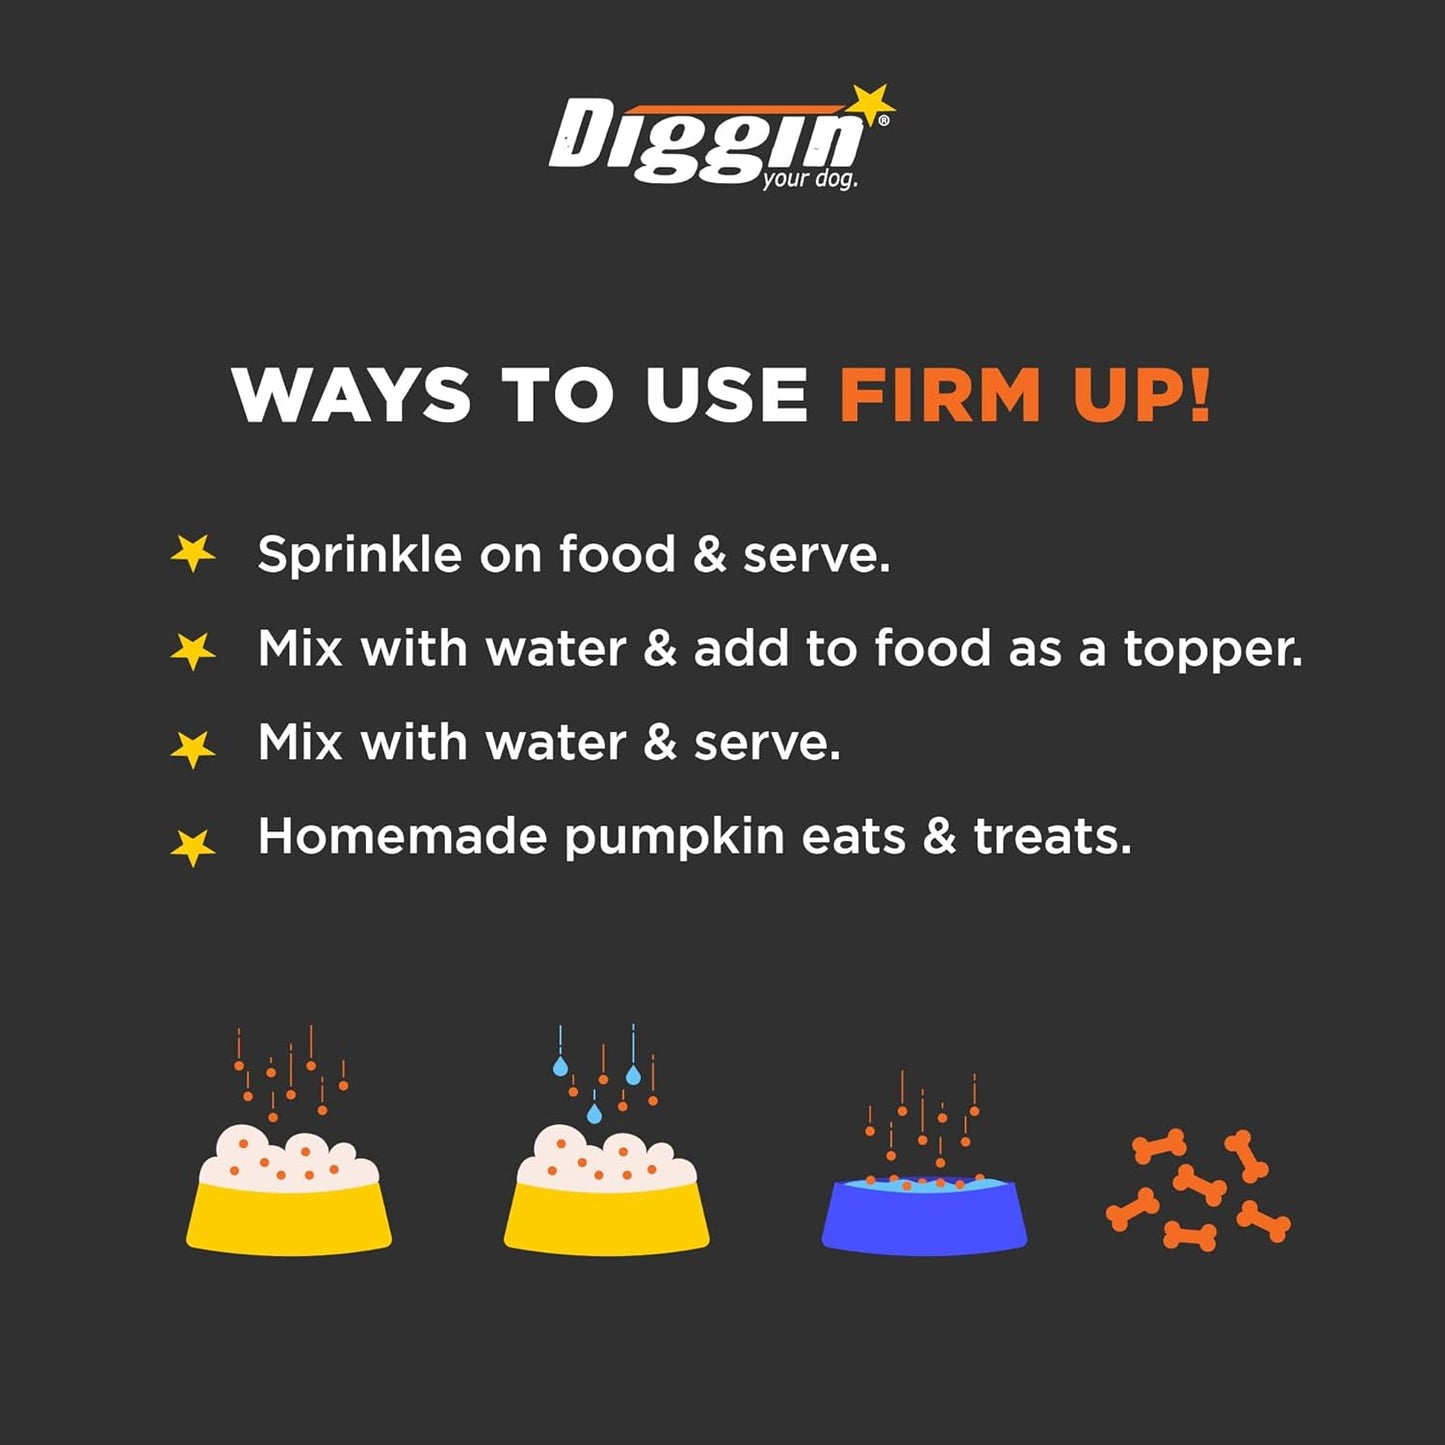 Diggin Firm Up Pumpkin 4-oz, Pet Supplement